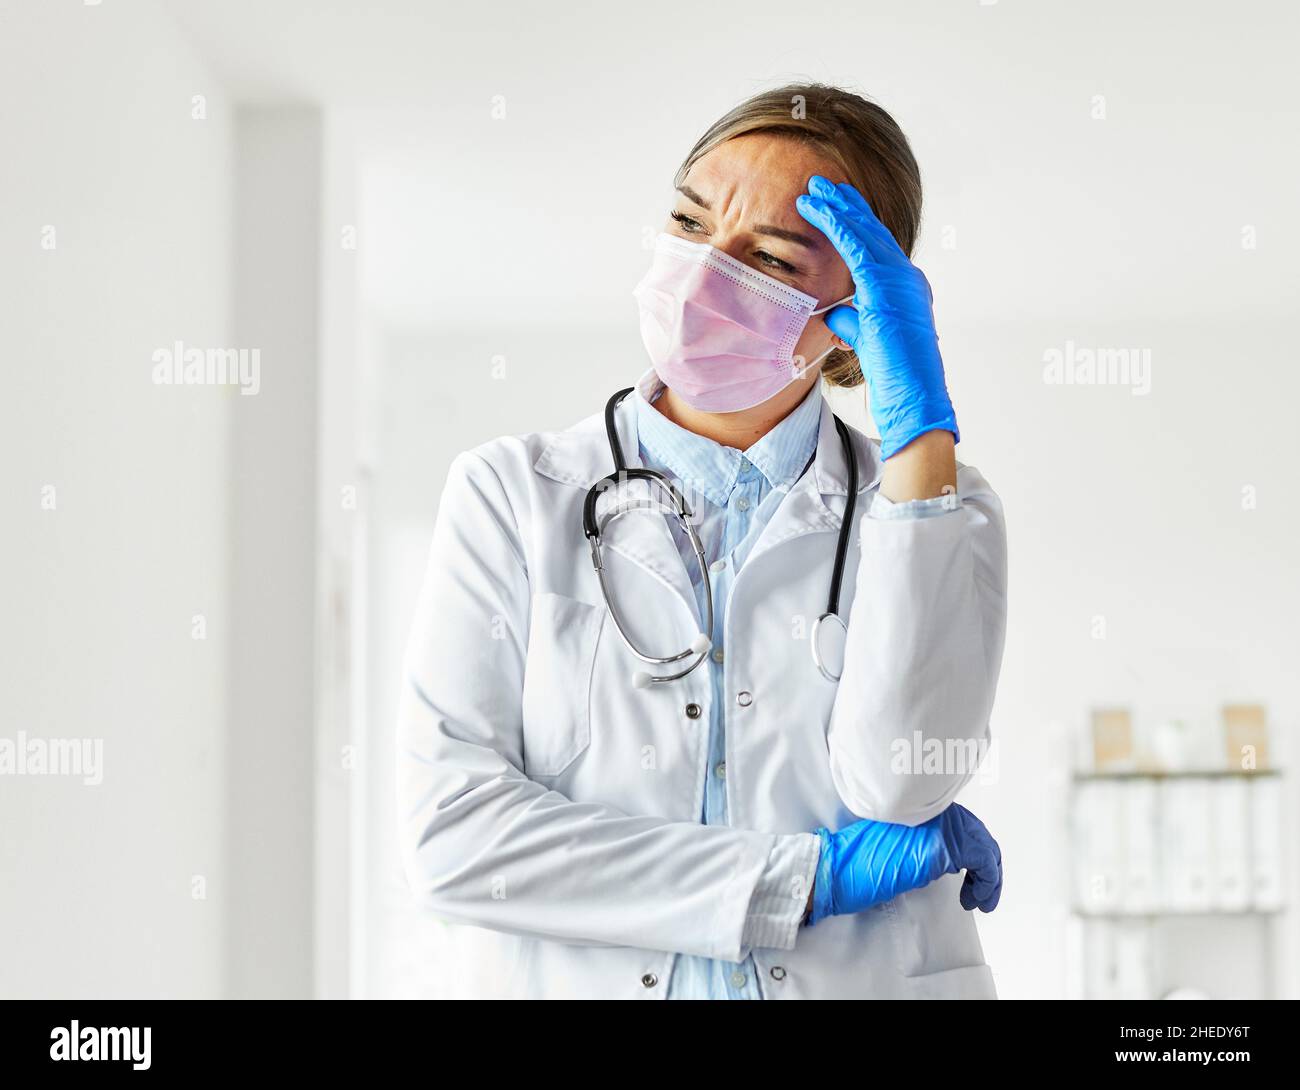 médecin masque médical épuisé hôpital coronavirus santé virus fatigué femme infirmière soins pandémique médecine Banque D'Images